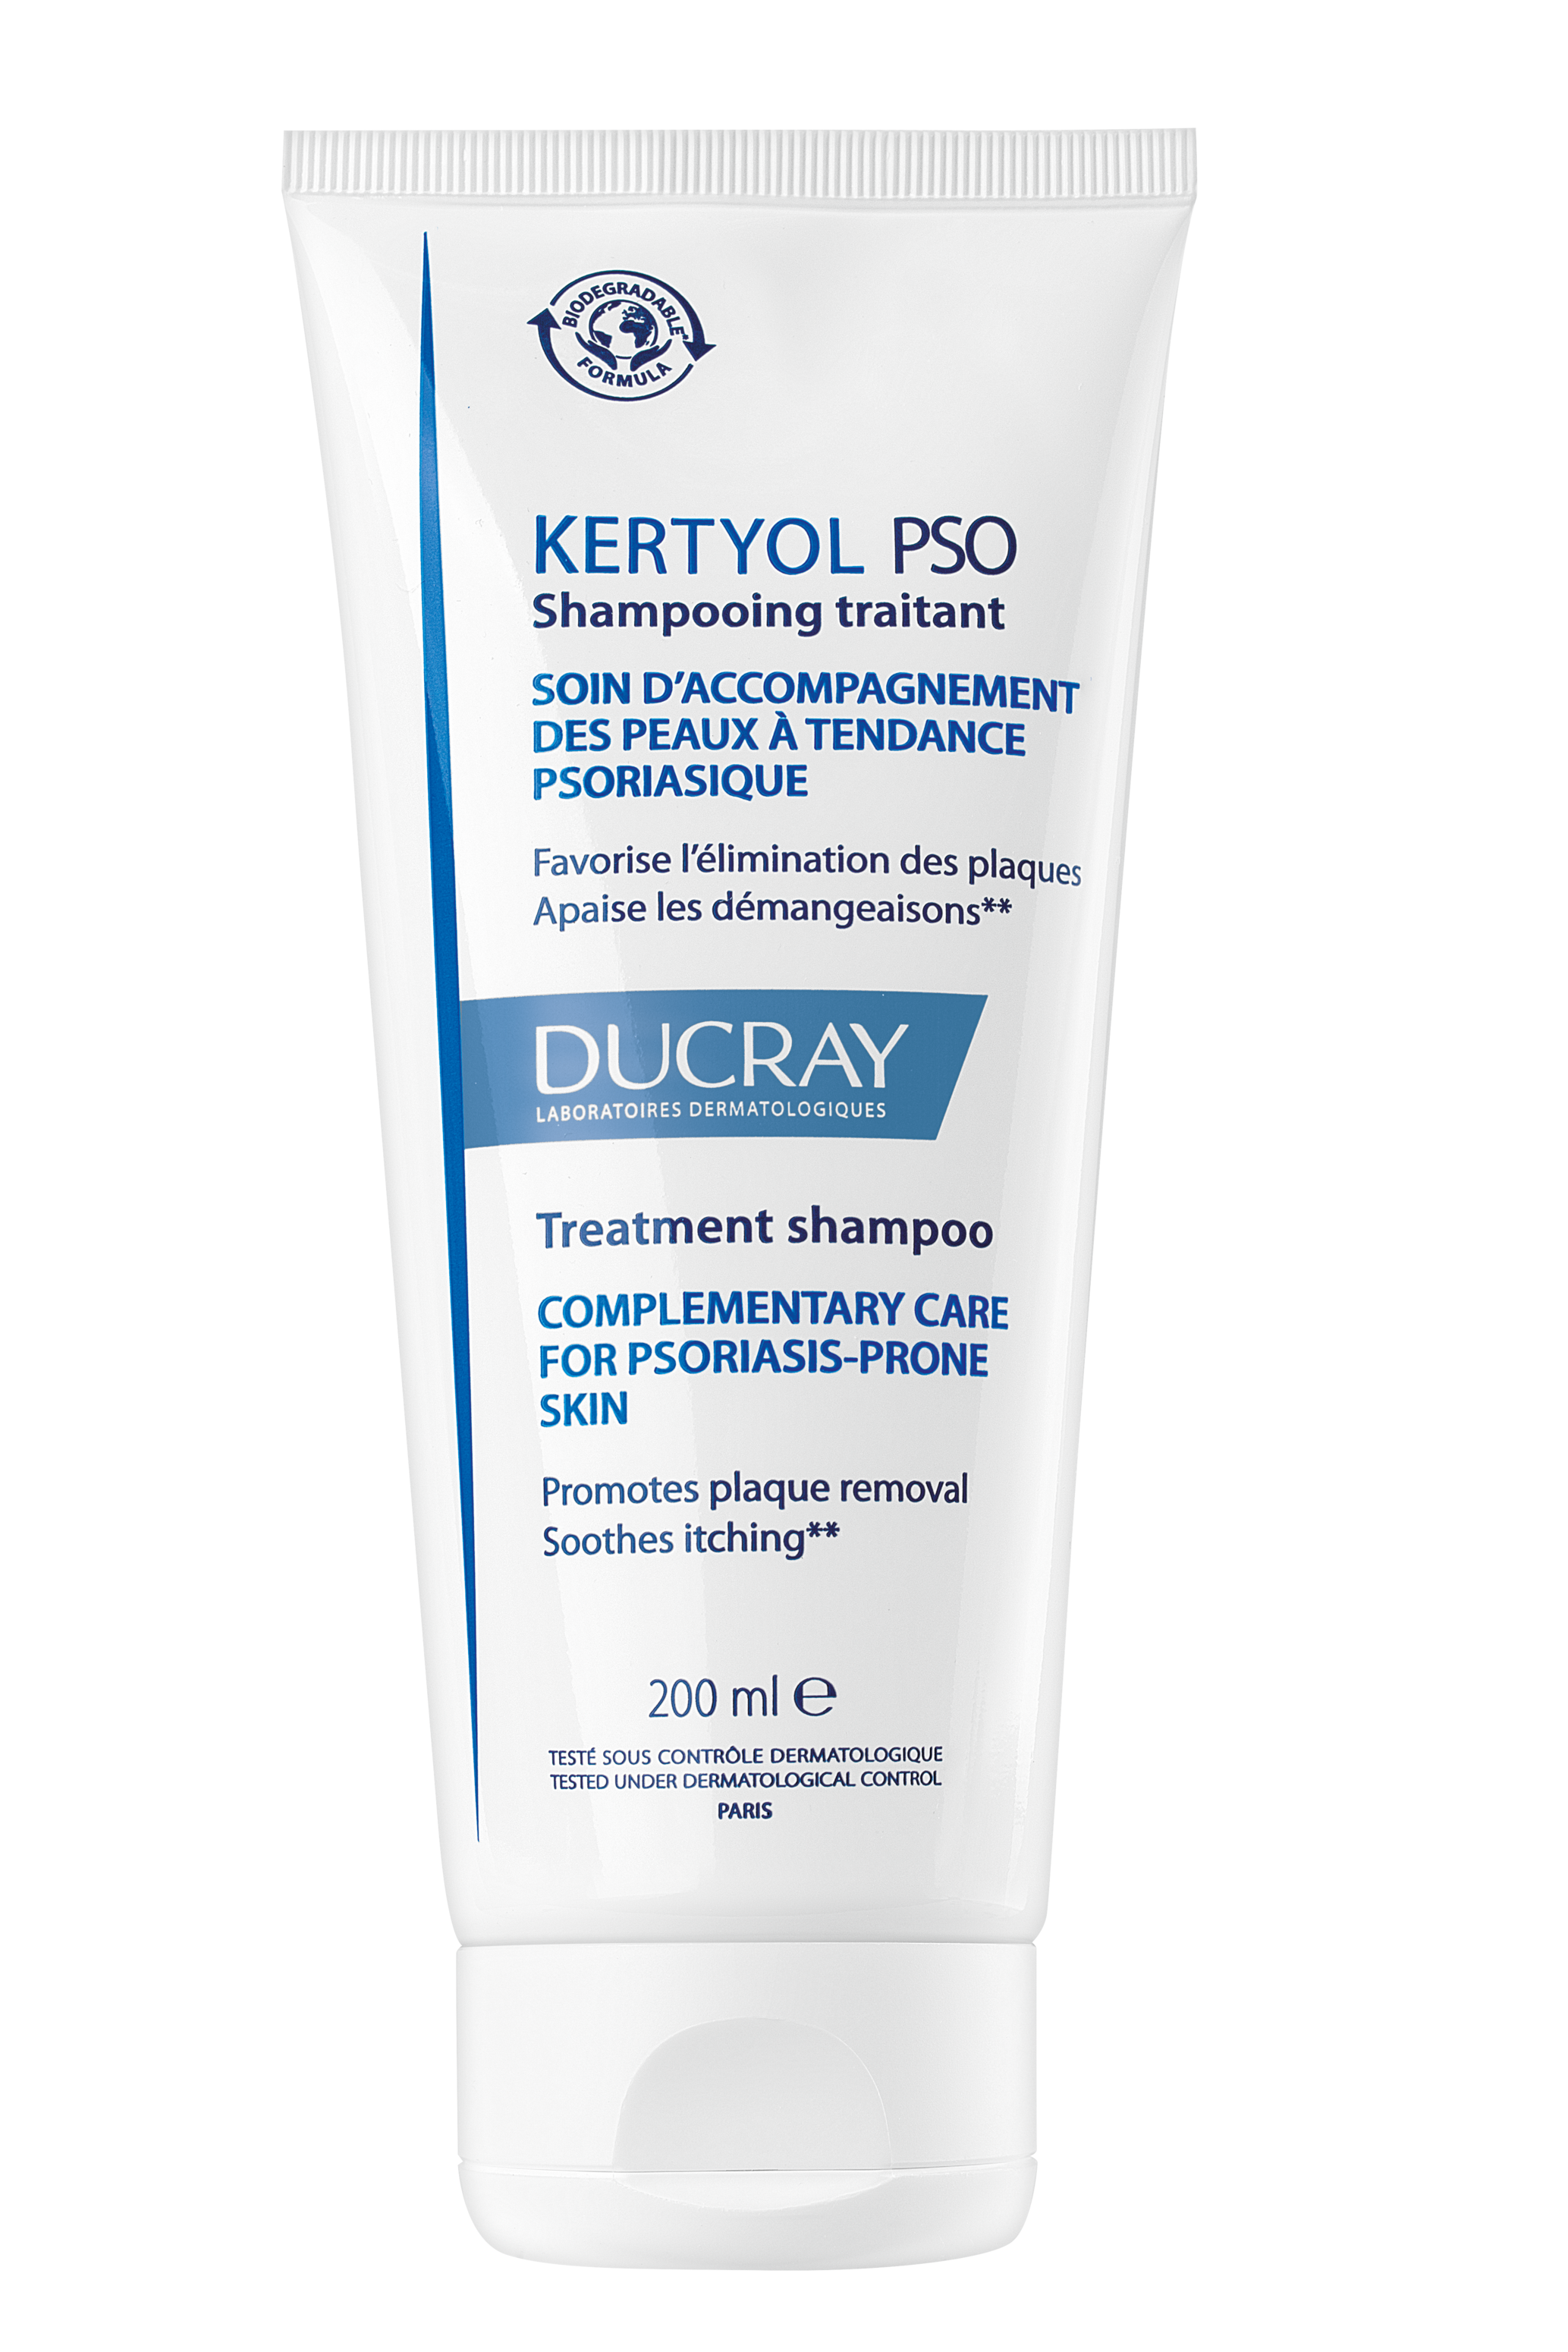 კერტიოლ ფსო სამკურნალო შამპუნი - დუკრე / KERTYOL PSO Treatment shampoo – DUCRAY